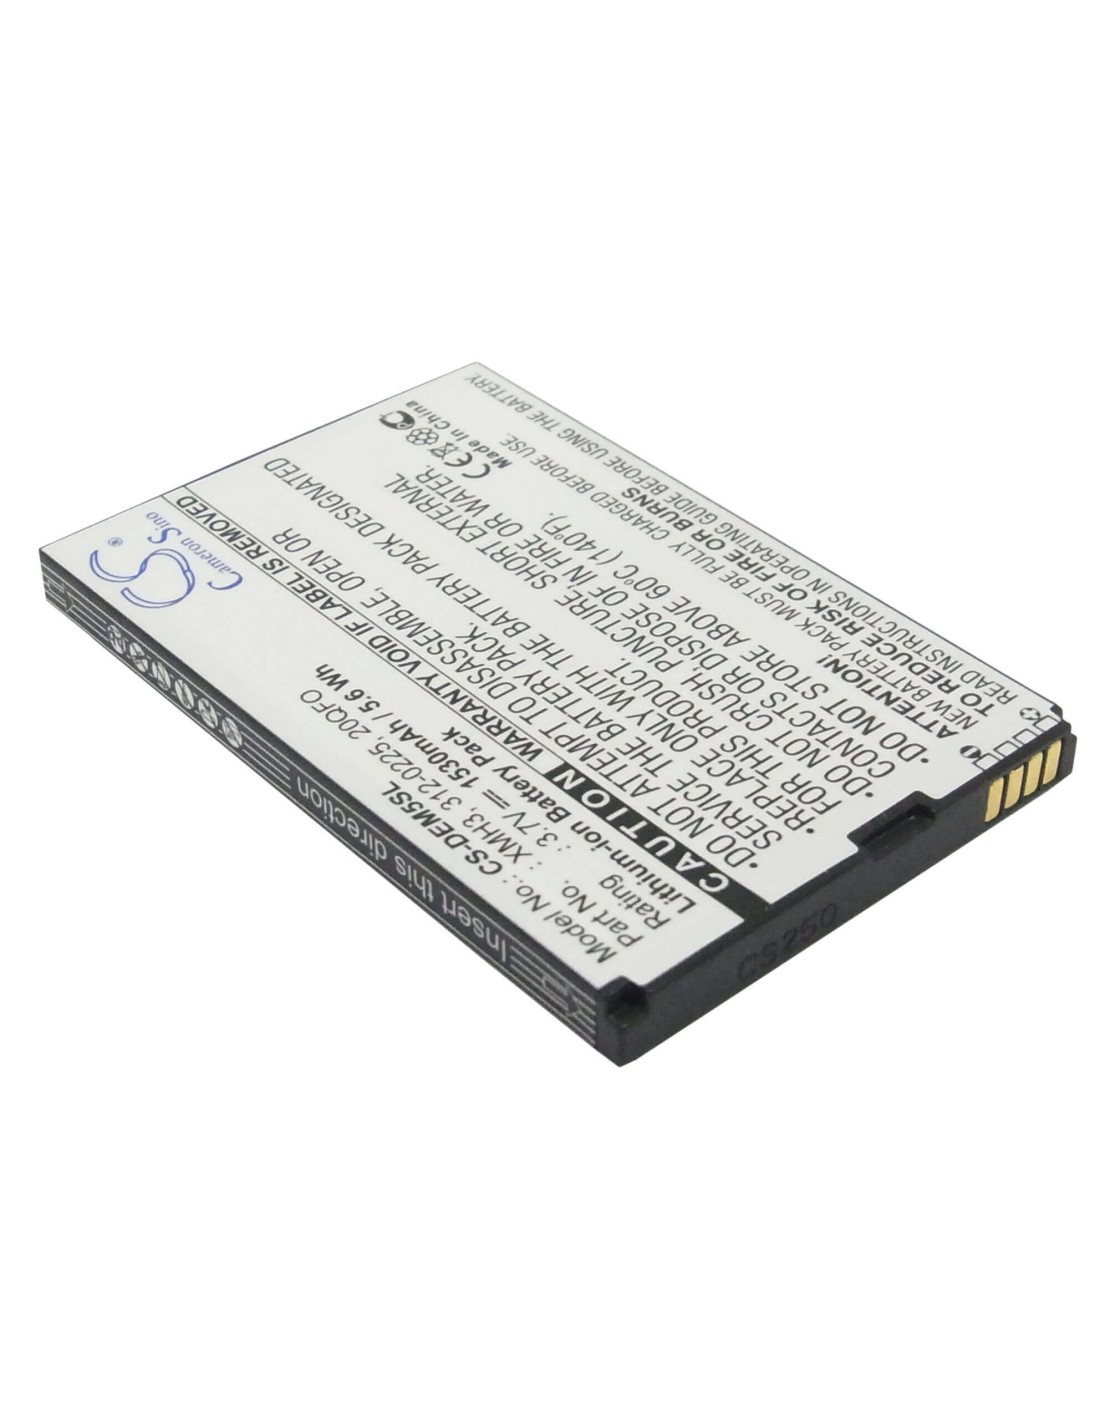 Battery for DELL Mini 5, Streak, Streak US 3.7V, 1530mAh - 5.66Wh